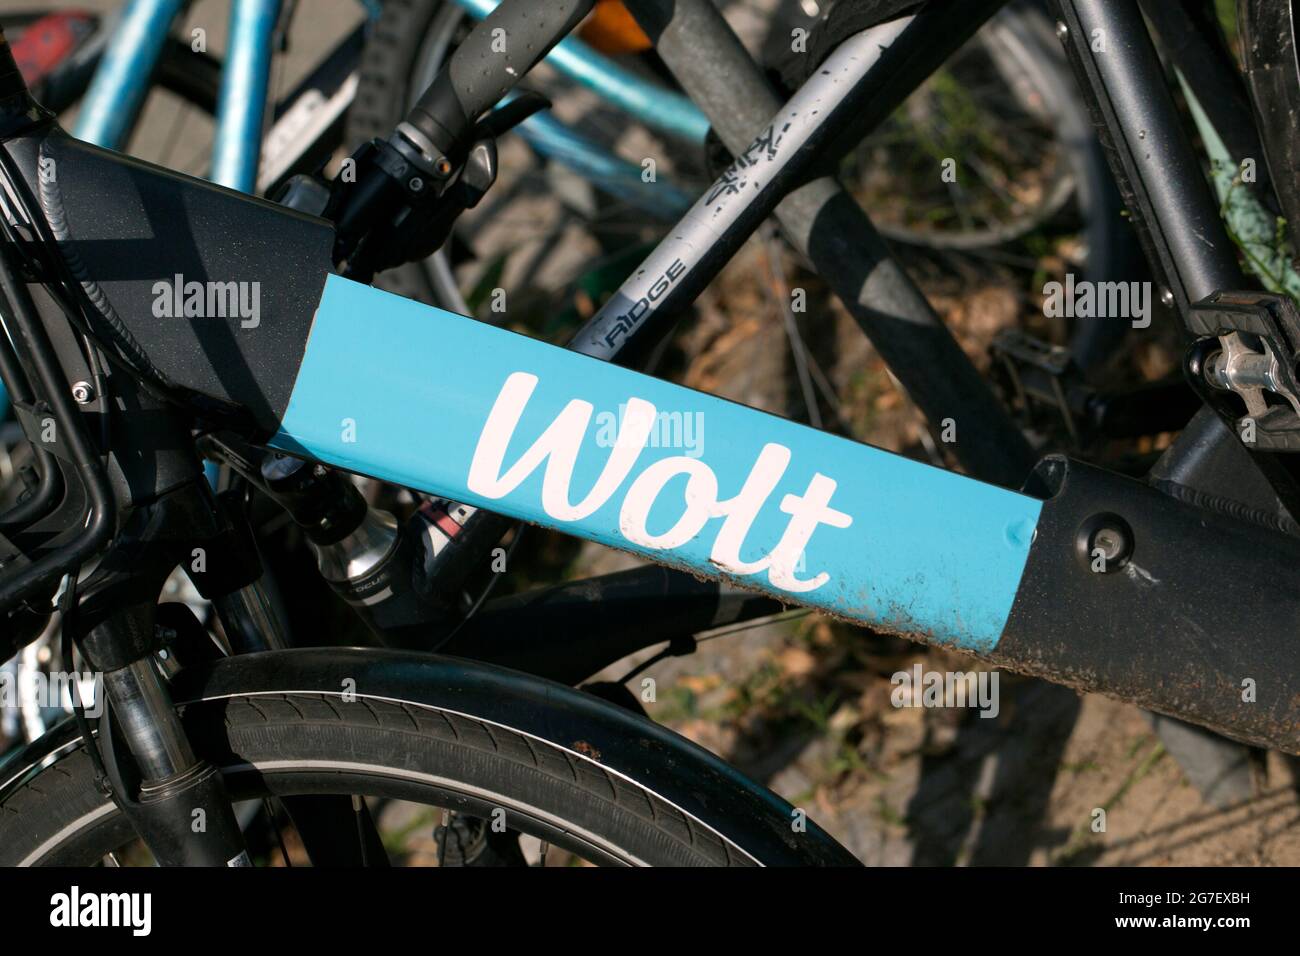 Vélo de Wolt, Berlin, Allemagne Banque D'Images